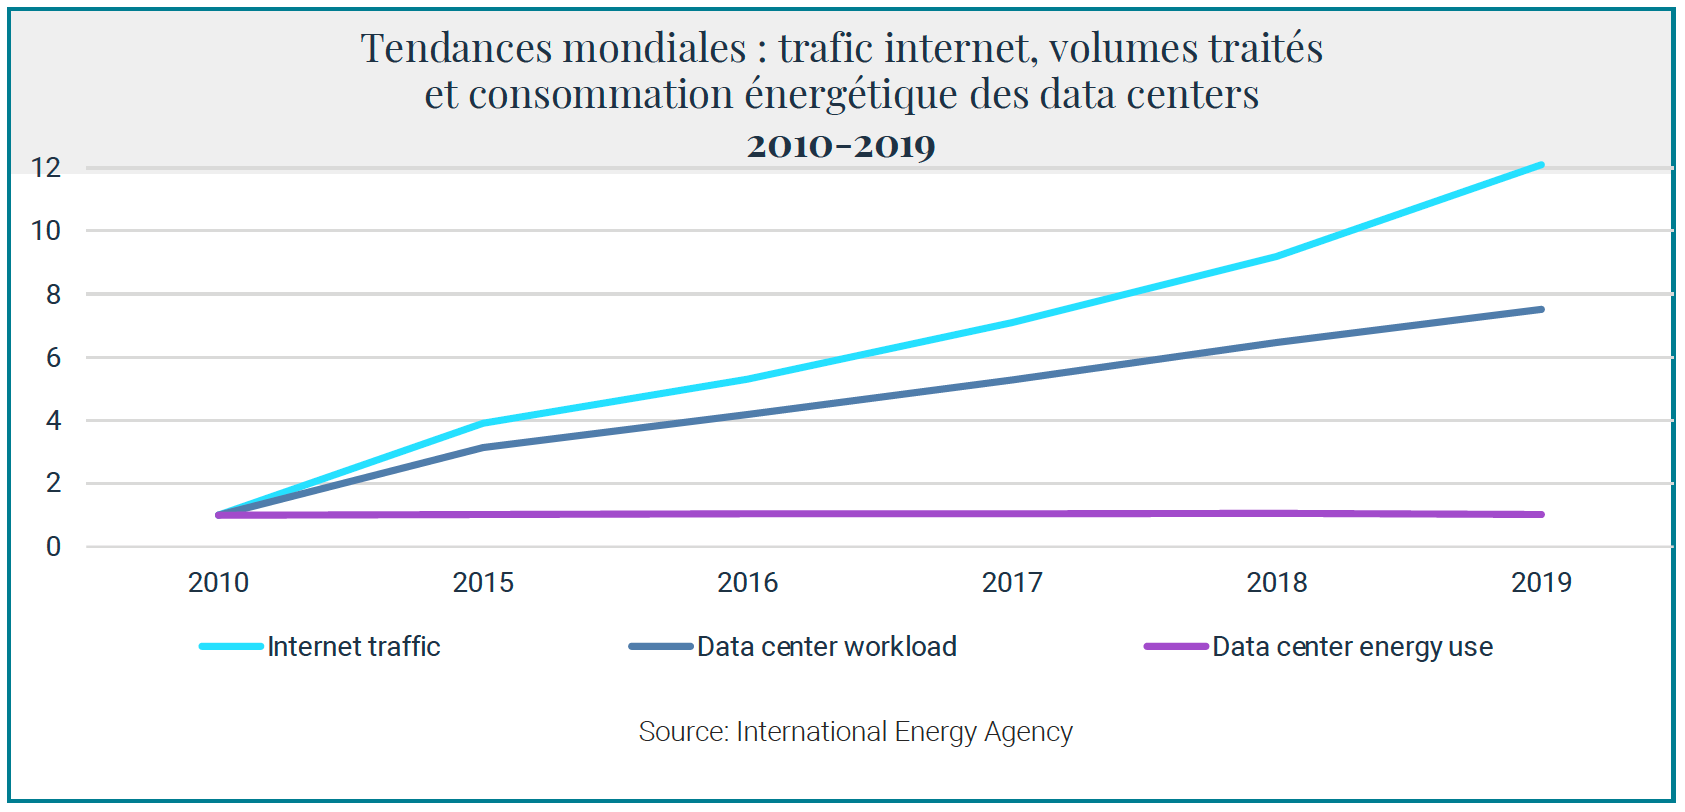 Tendances-mondiales-trafic-internet-volumes%20traites-consommation-energetique-datacenters_2010-2019